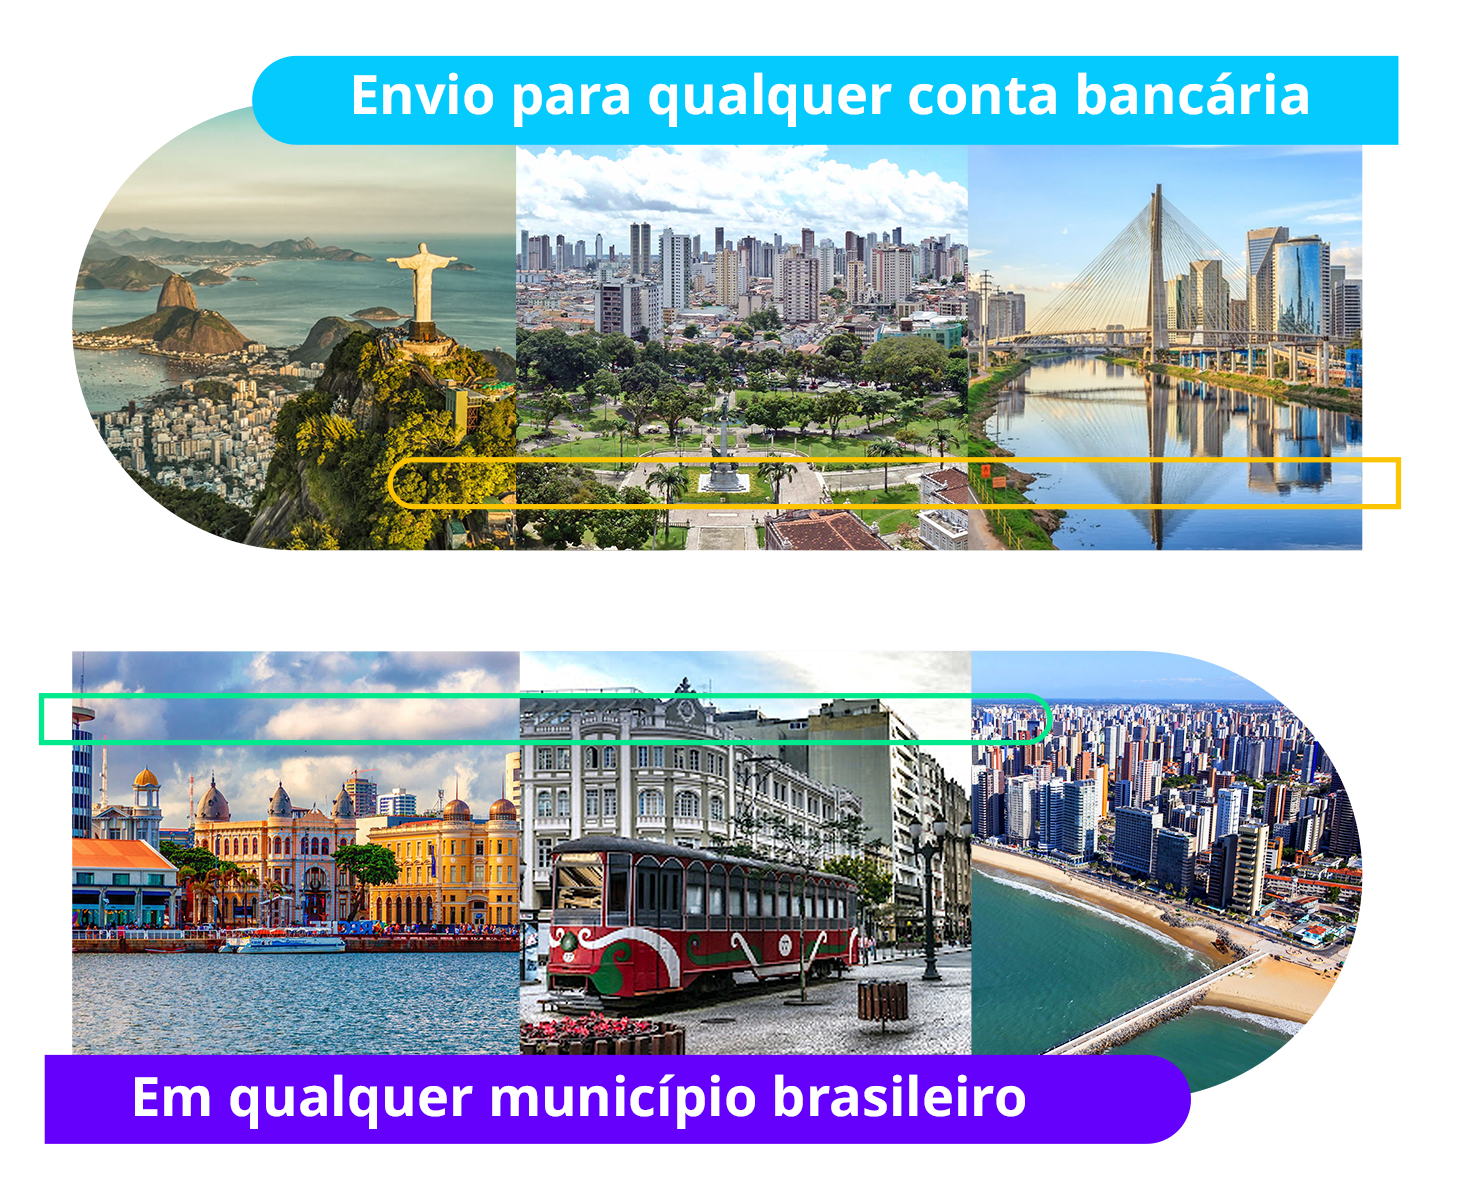 Envio para qualquer conta bancária, em qualquer município brasileiro.